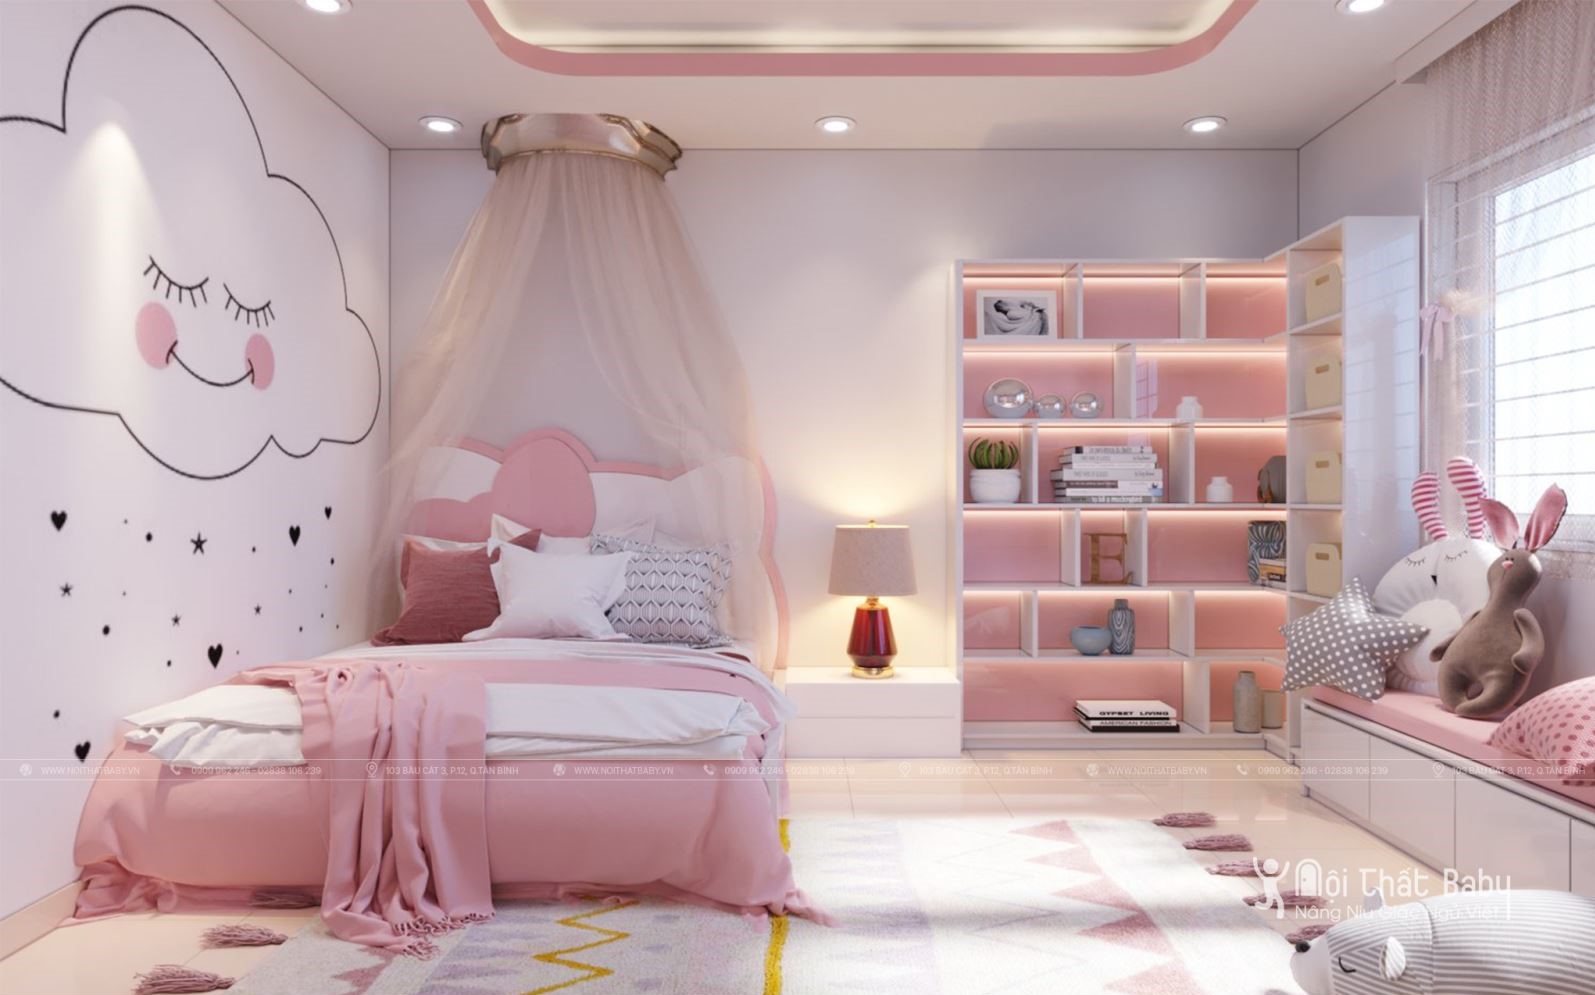 Xem ngay 5 ý tưởng thiết kế phòng ngủ cho bé đẹp mê ly